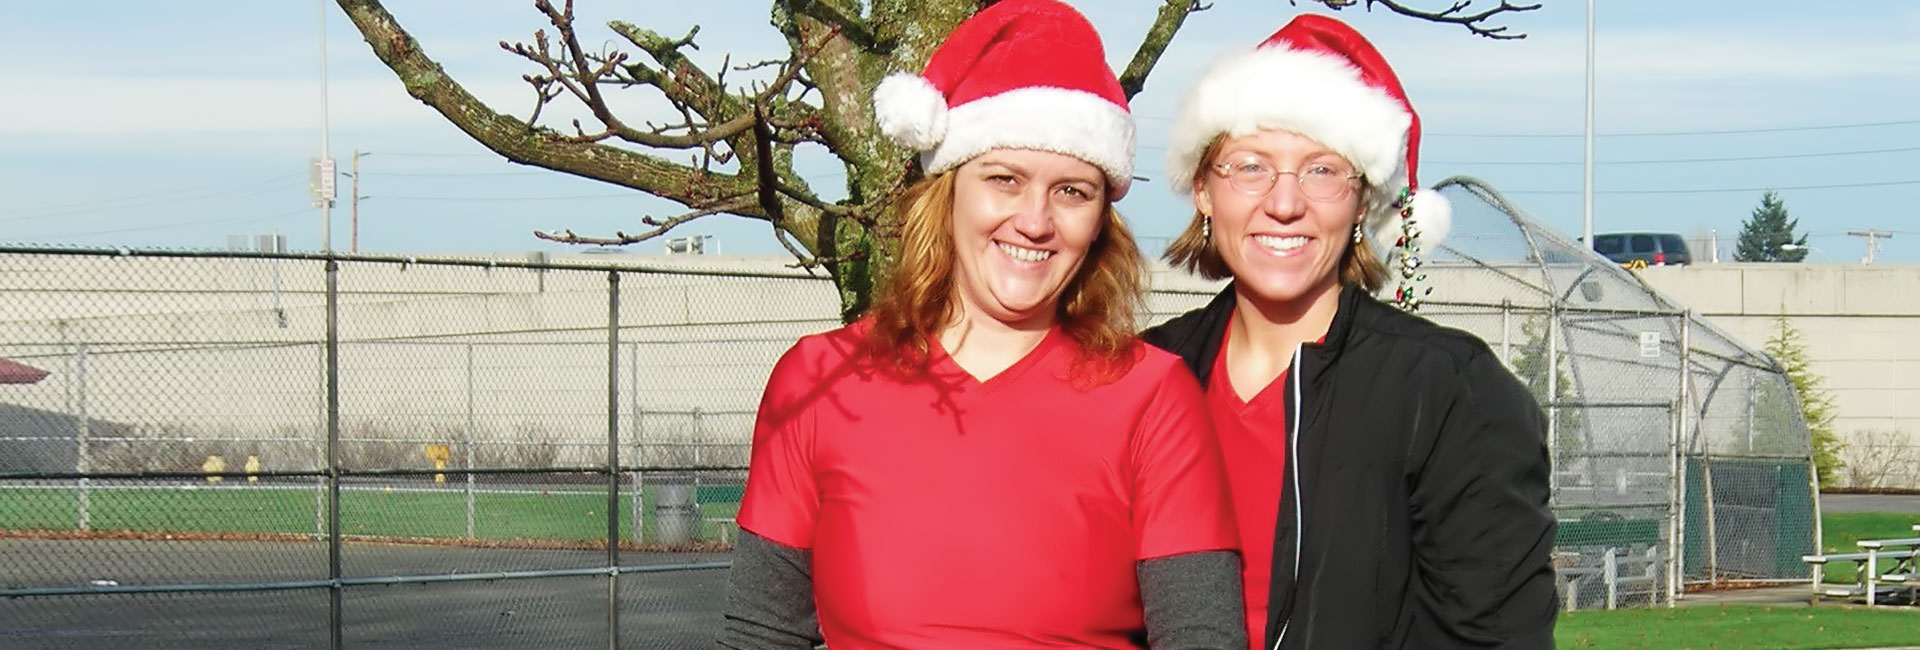 two happy women in Santa hats smile